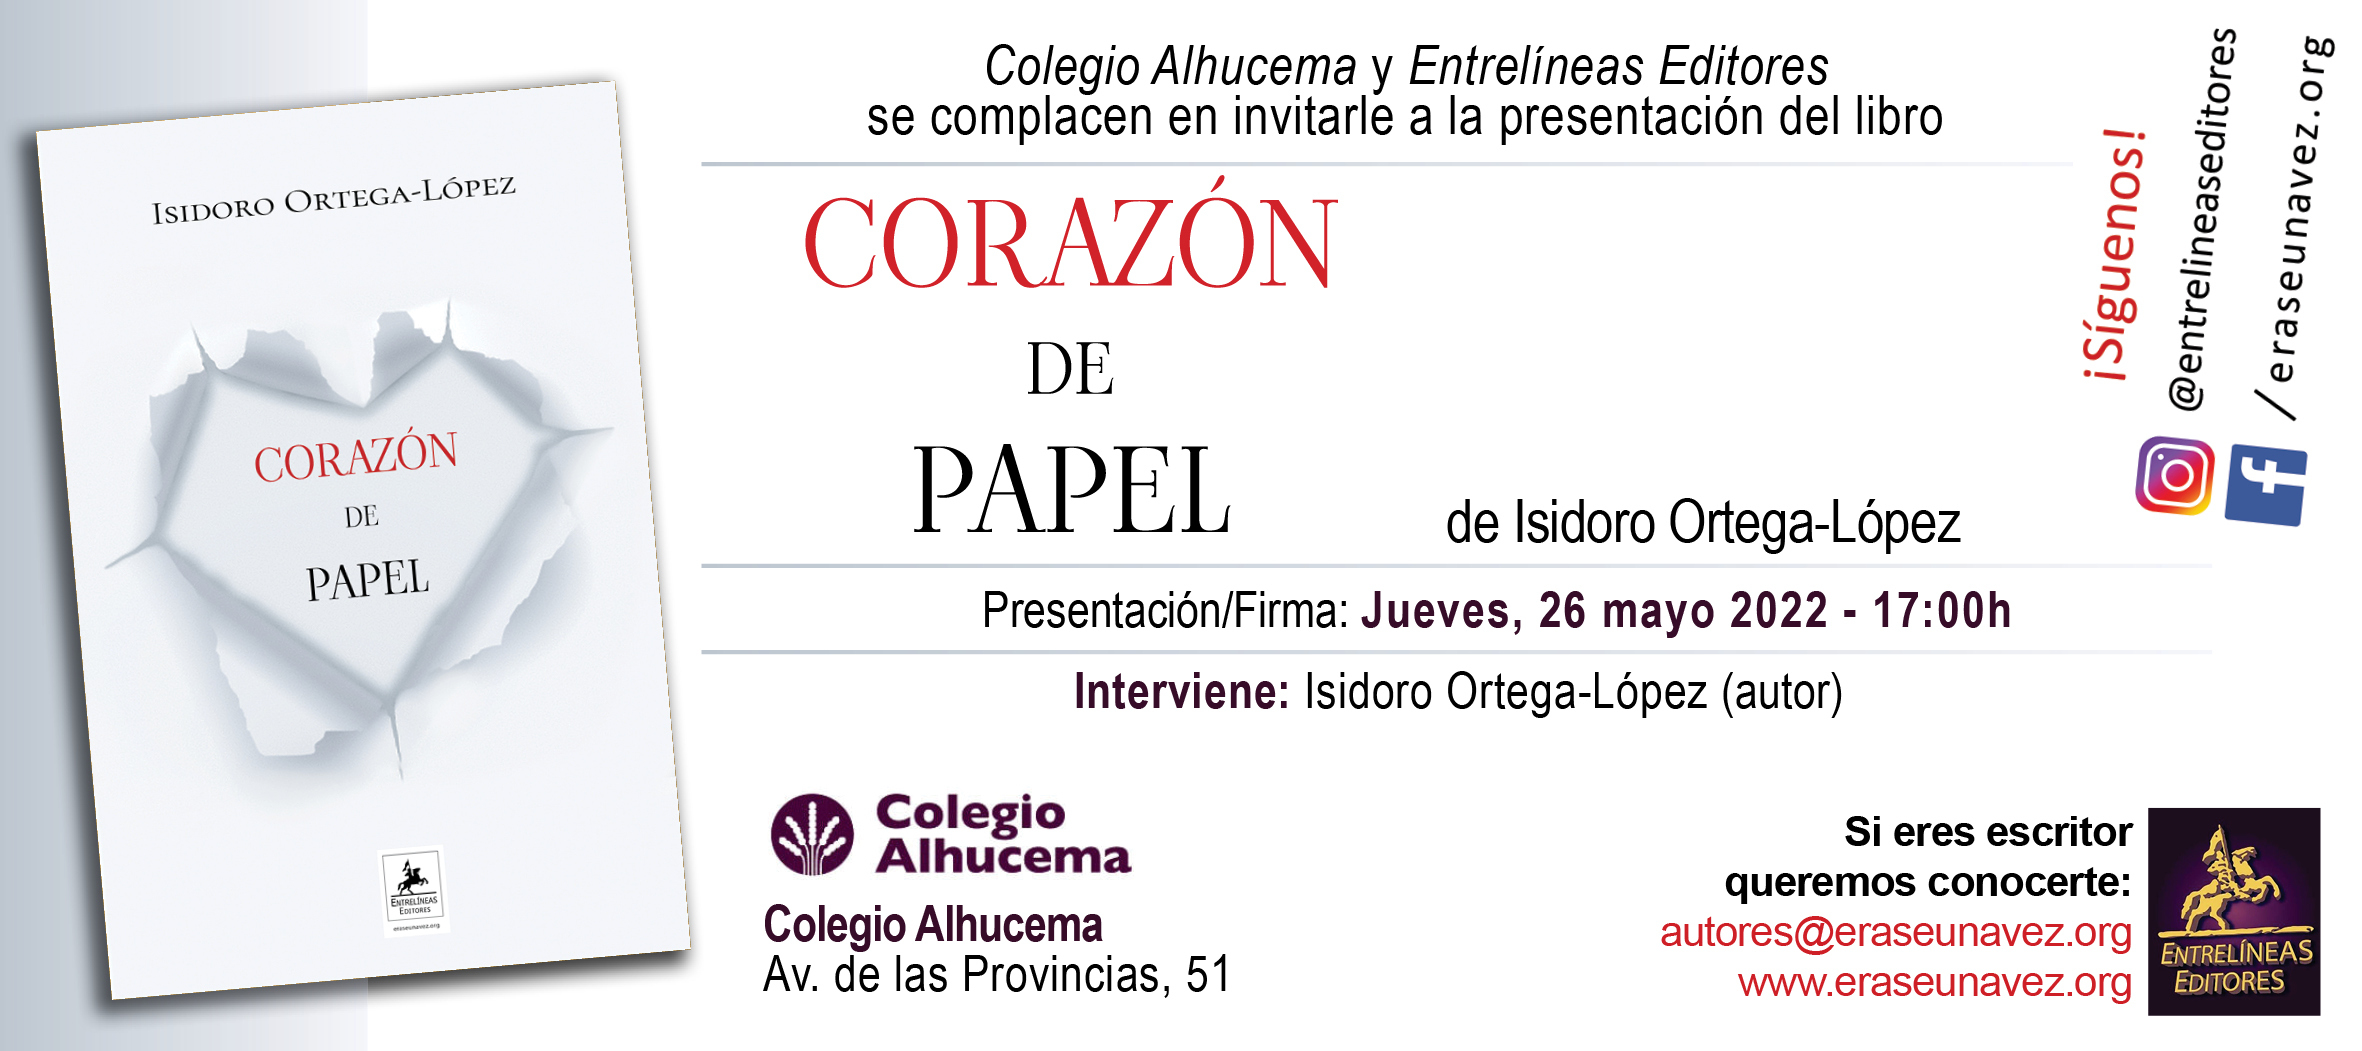 2022-05-26_-_Corazon_de_papel_-_invitacion